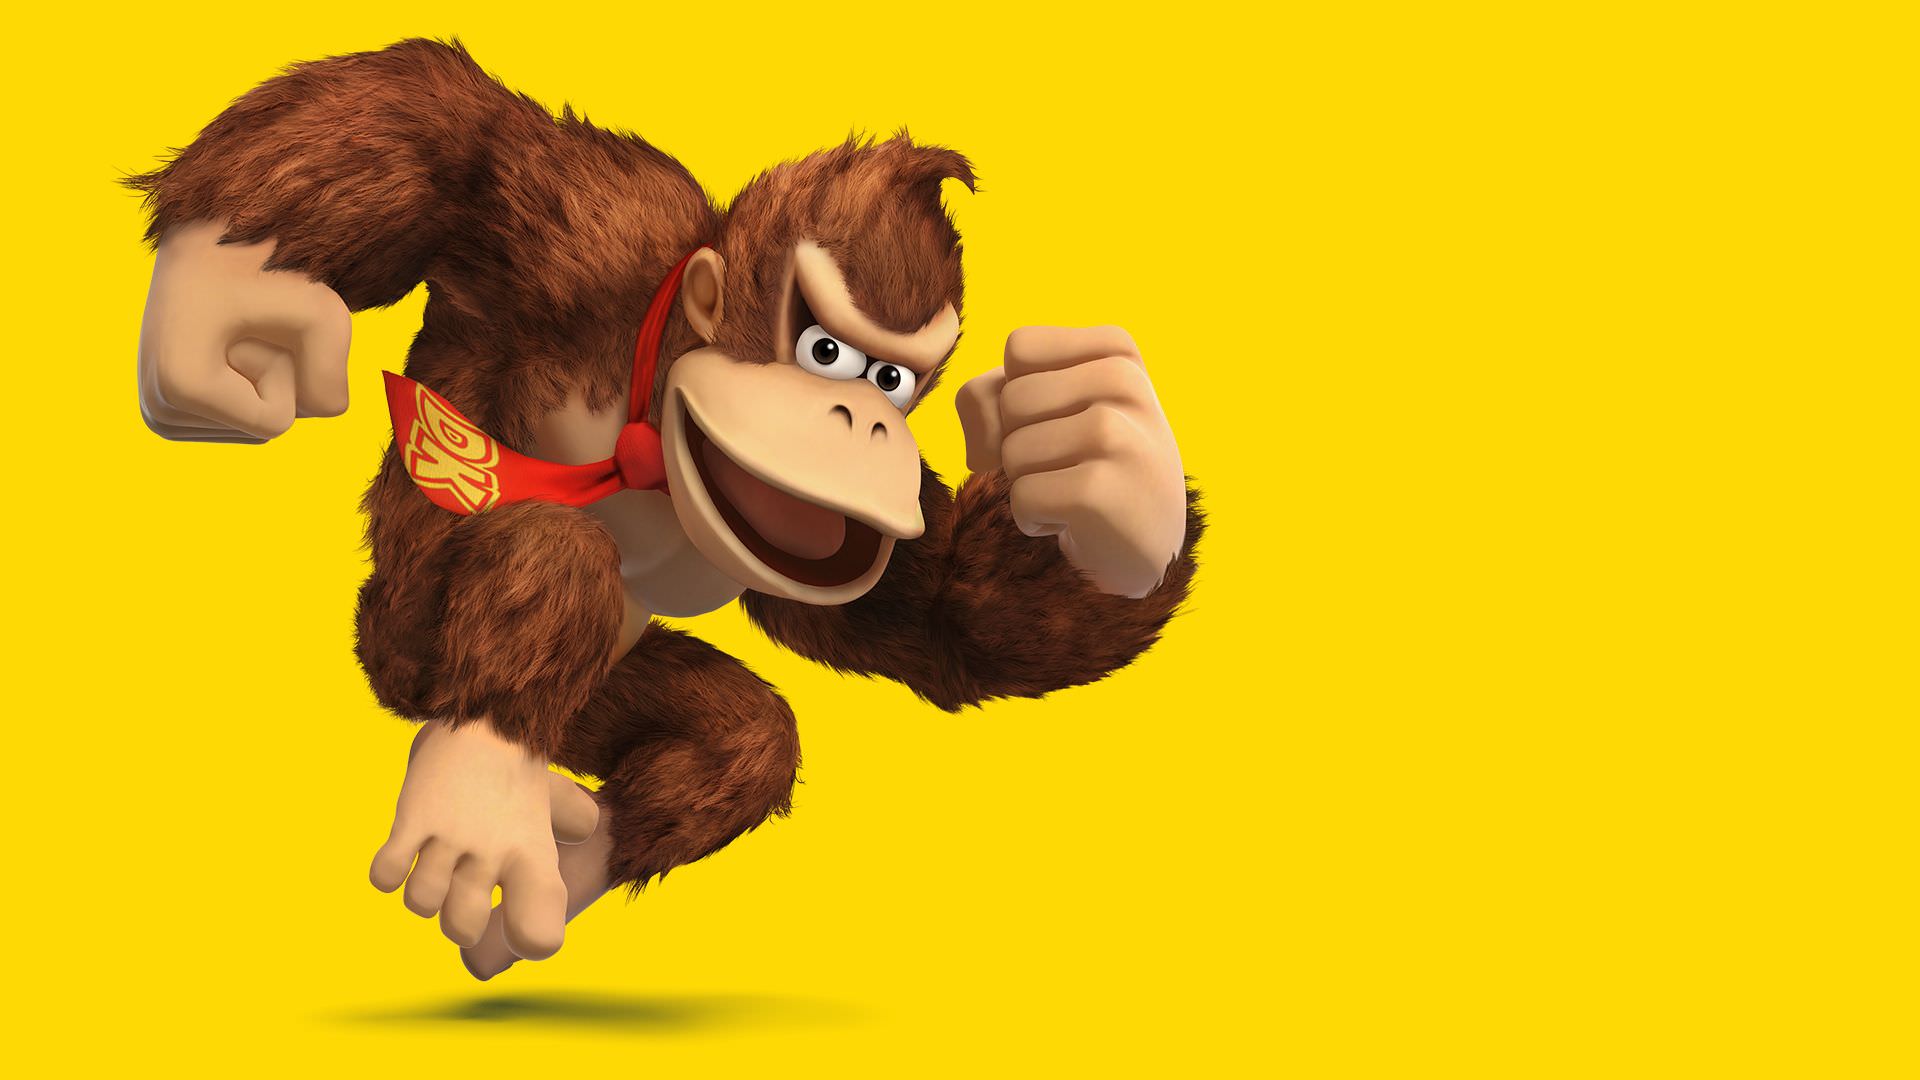 شایعه: ساخت انیمیشن Donkey Kong با صداپیشگی سث روگن 